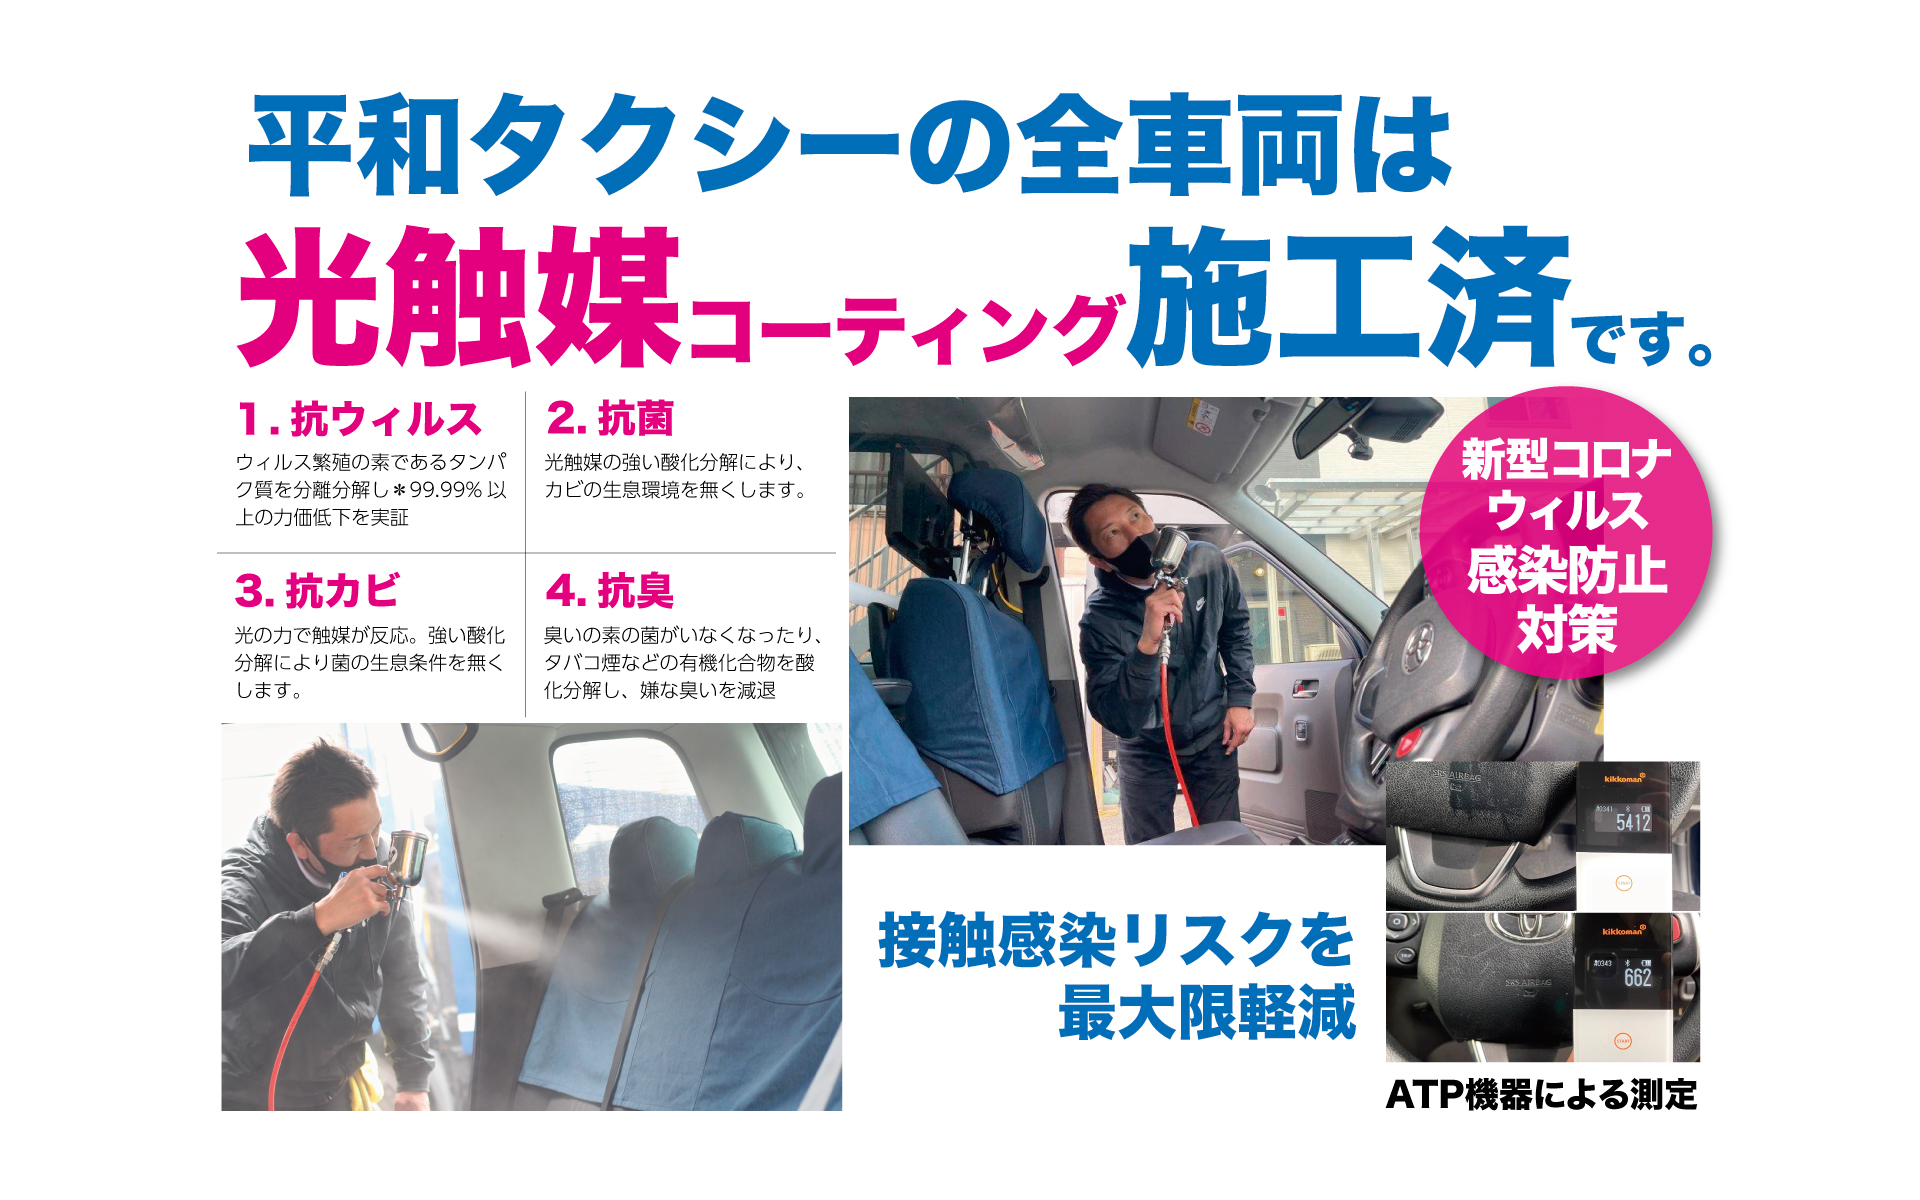 平和タクシー株式会社 伊豆 箱根 富士山を巡る 静岡県 沼津 三島のタクシー会社です